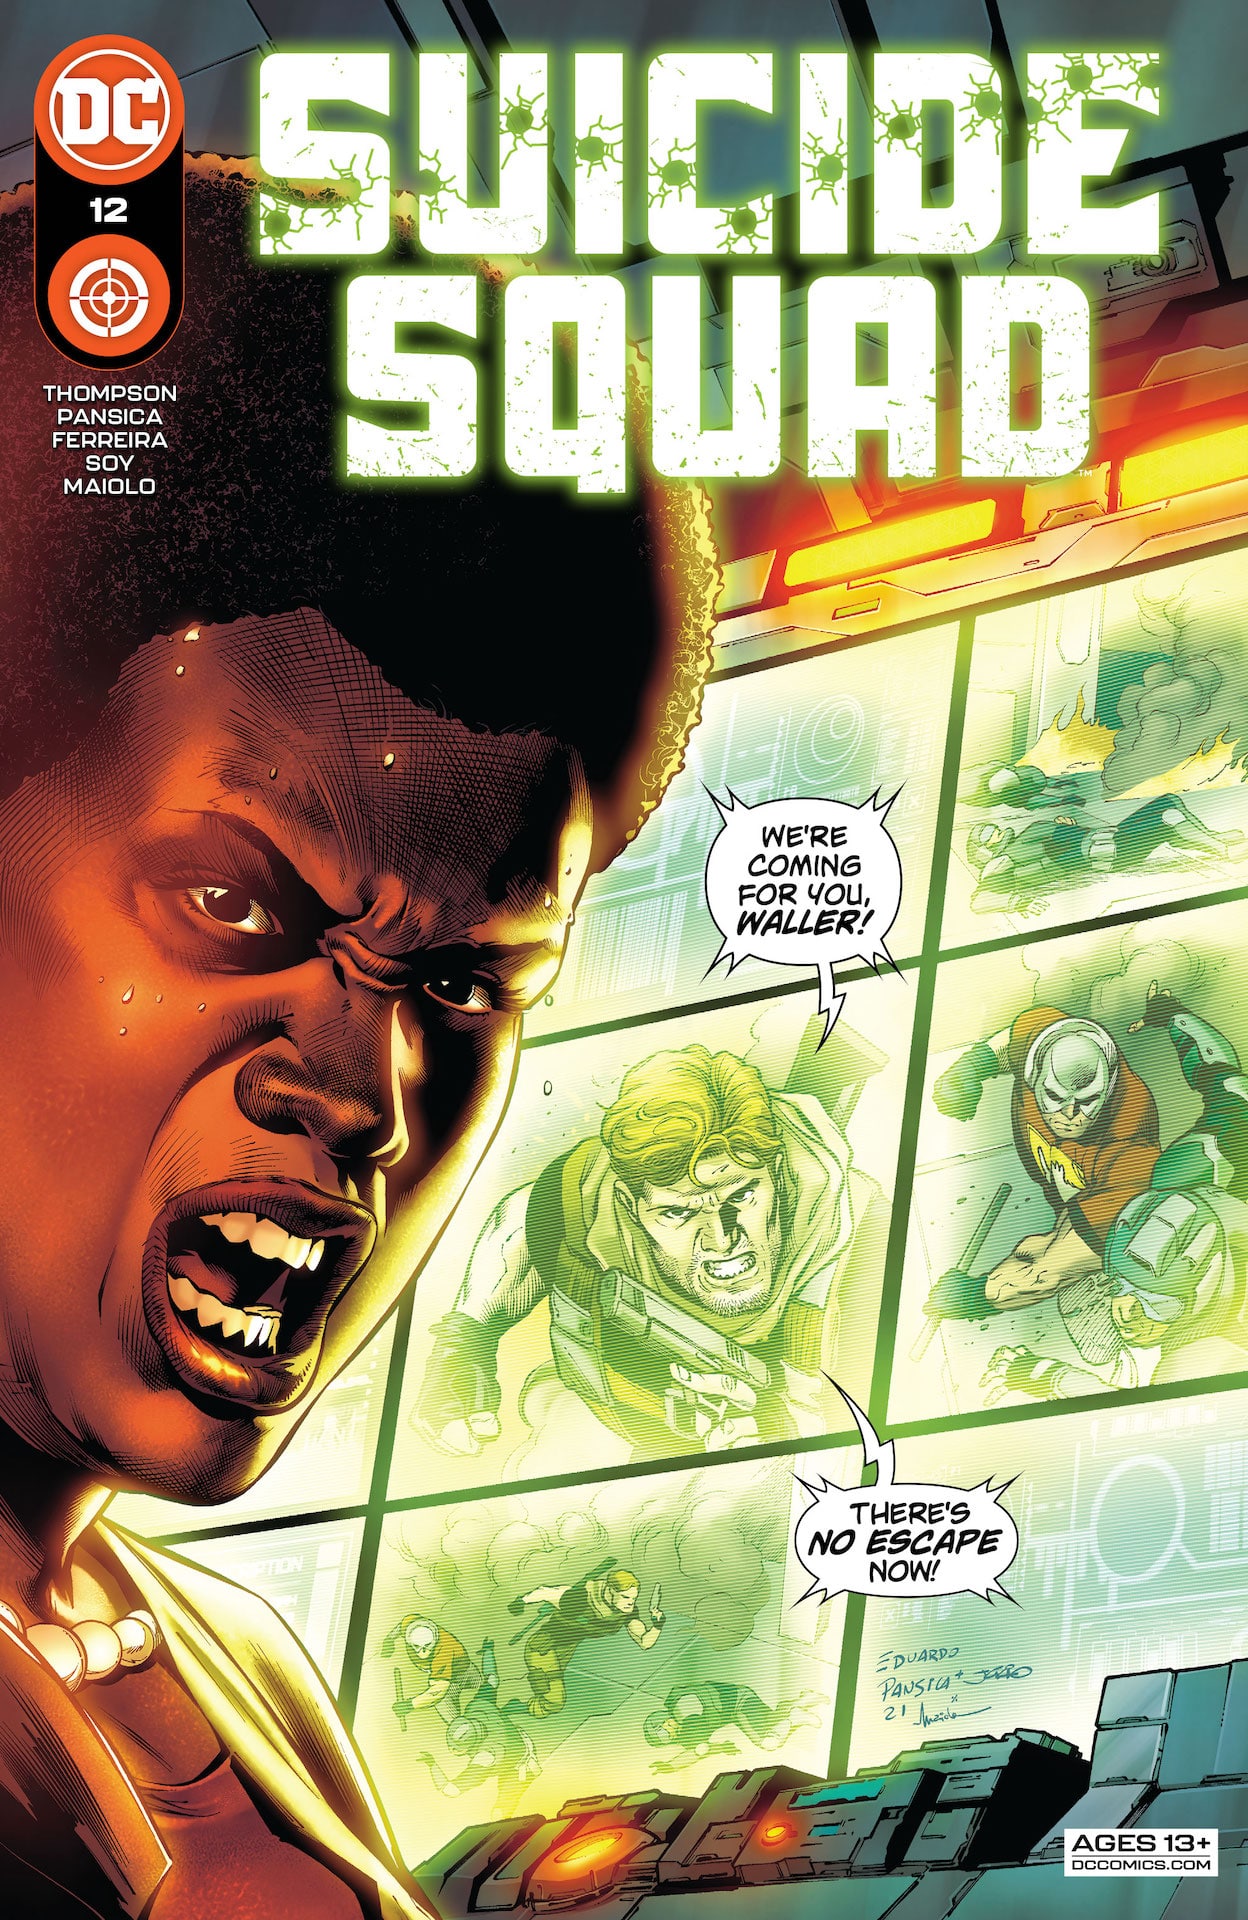 DC Preview: Suicide Squad #12